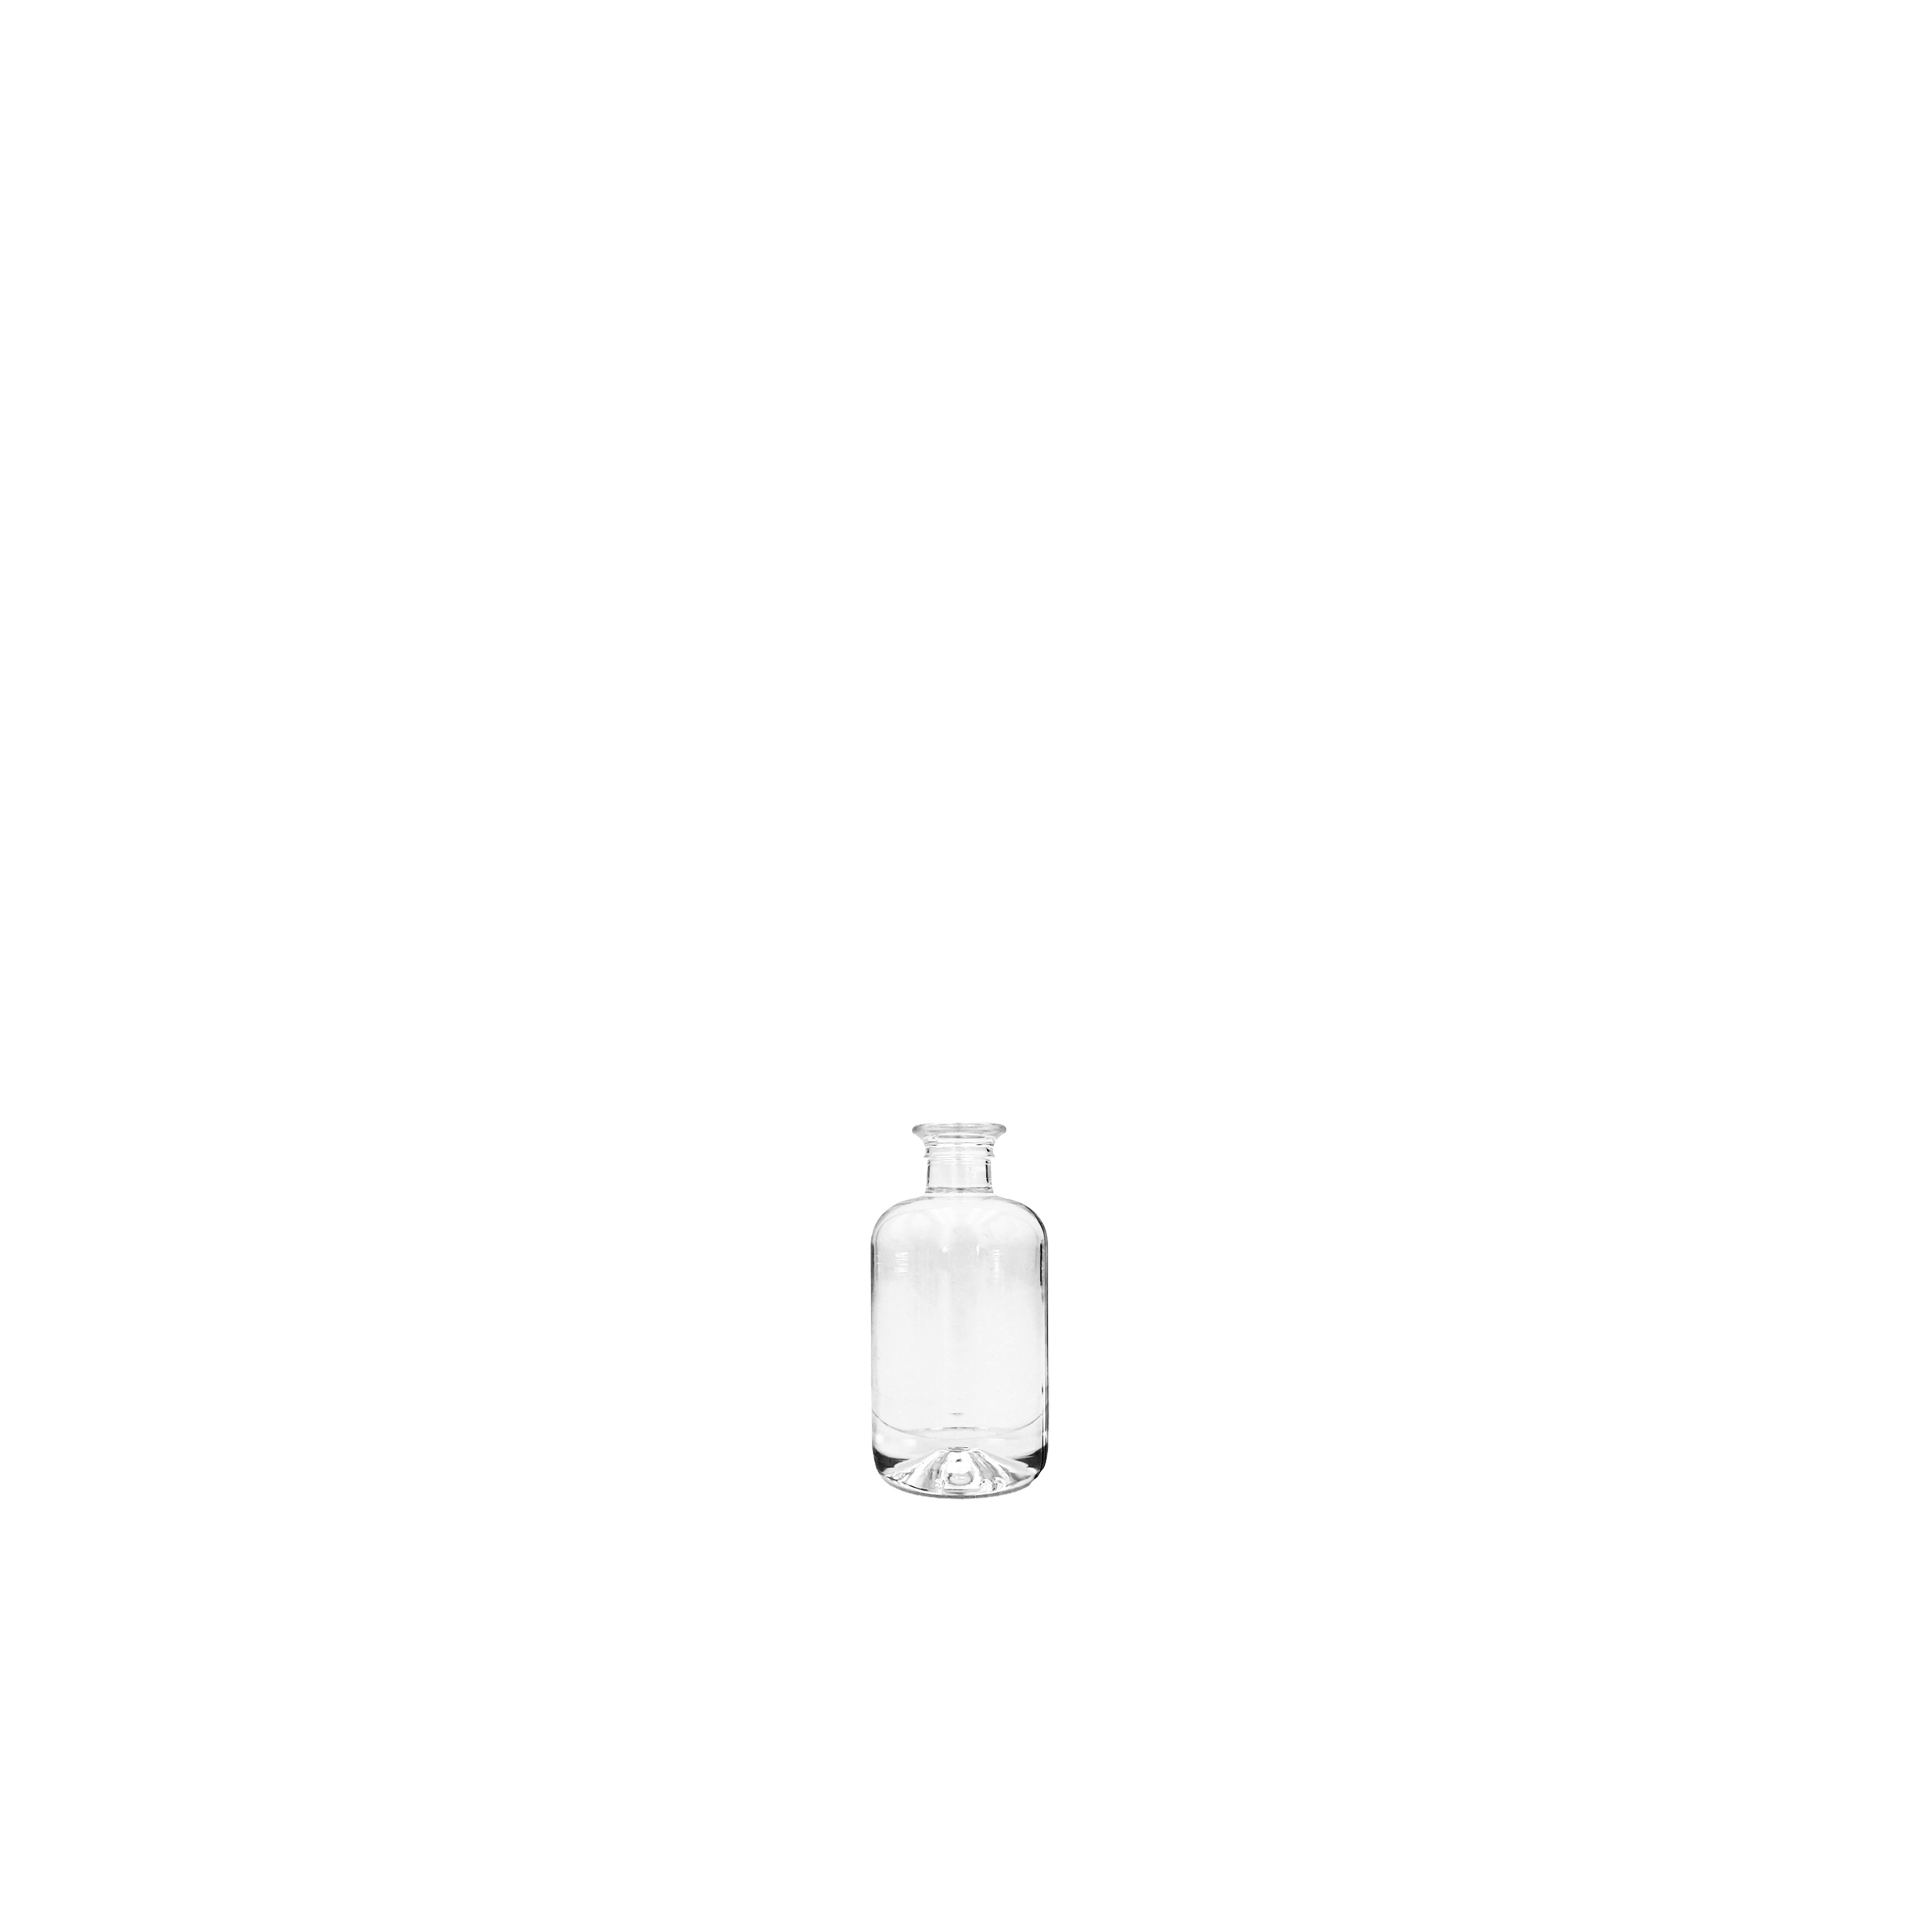 Apothekerflasche 0,04 Liter, weiß (OHNE VERSCHLUSS)